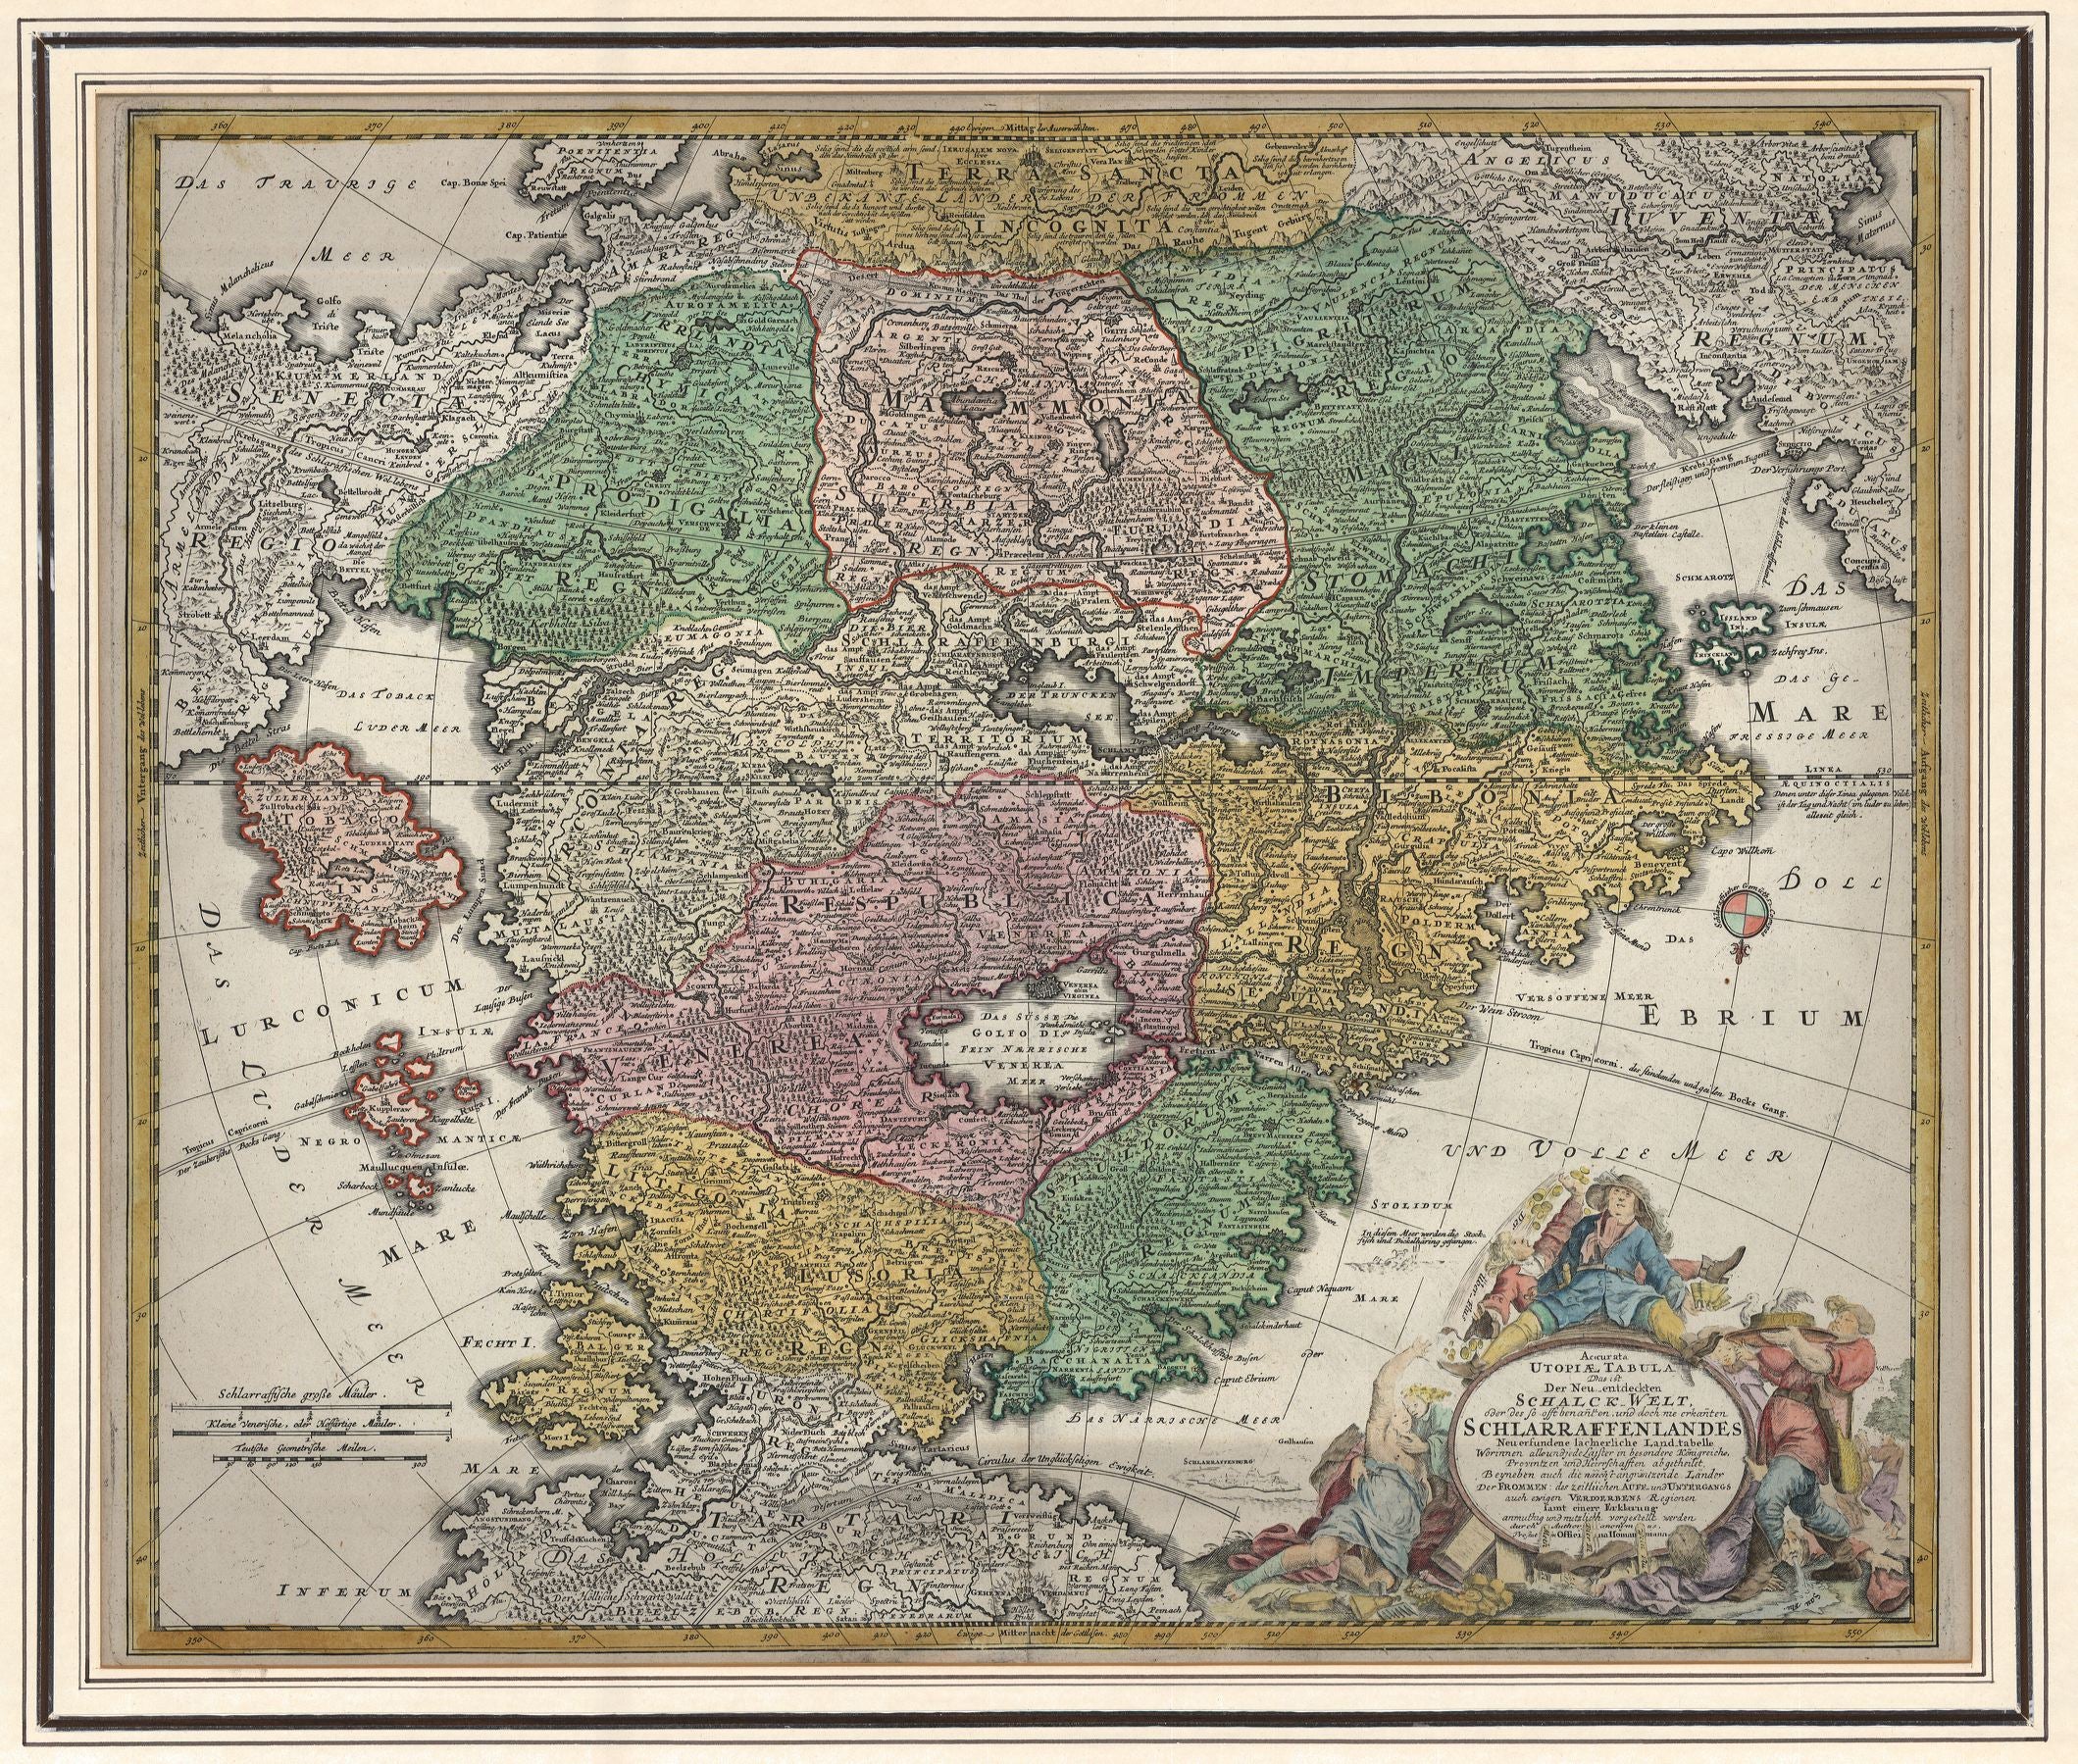 R3076  Homann, Johann Baptist: Accurata Utopia Tabula, Das ist Der Neu entdeckten Schalck Welt, oder des so oft benannten, und doch nie erkanten Schlarraffenlandes.  1700